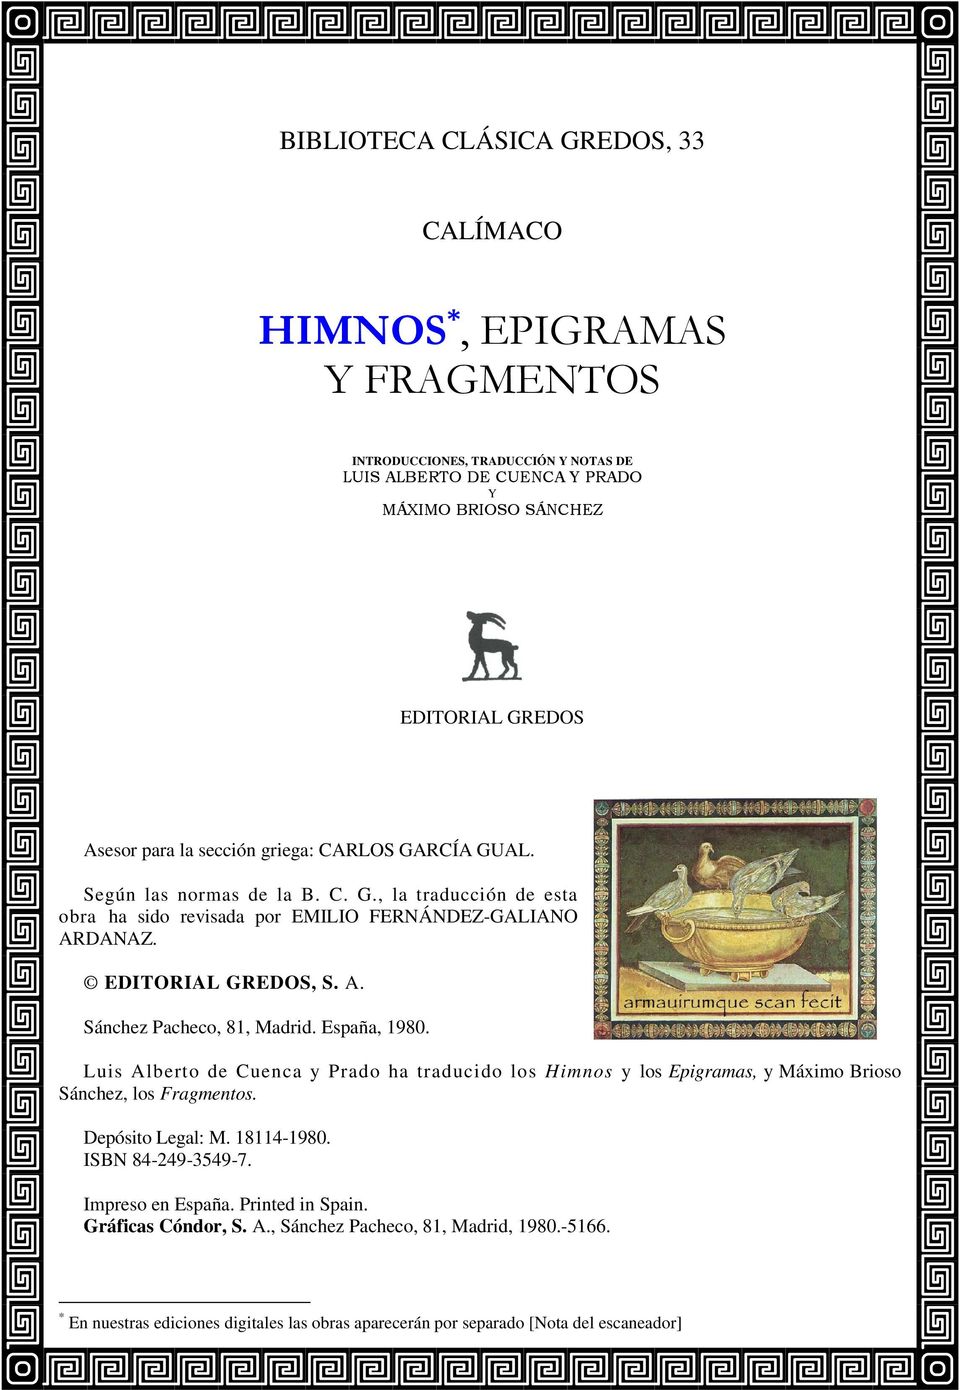 España, 1980. Luis Alberto de Cuenca y Prado ha traducido los Himnos y los Epigramas, y Máximo Brioso Sánchez, los Fragmentos. Depósito Legal: M. 18114-1980. ISBN 84-249-3549-7.